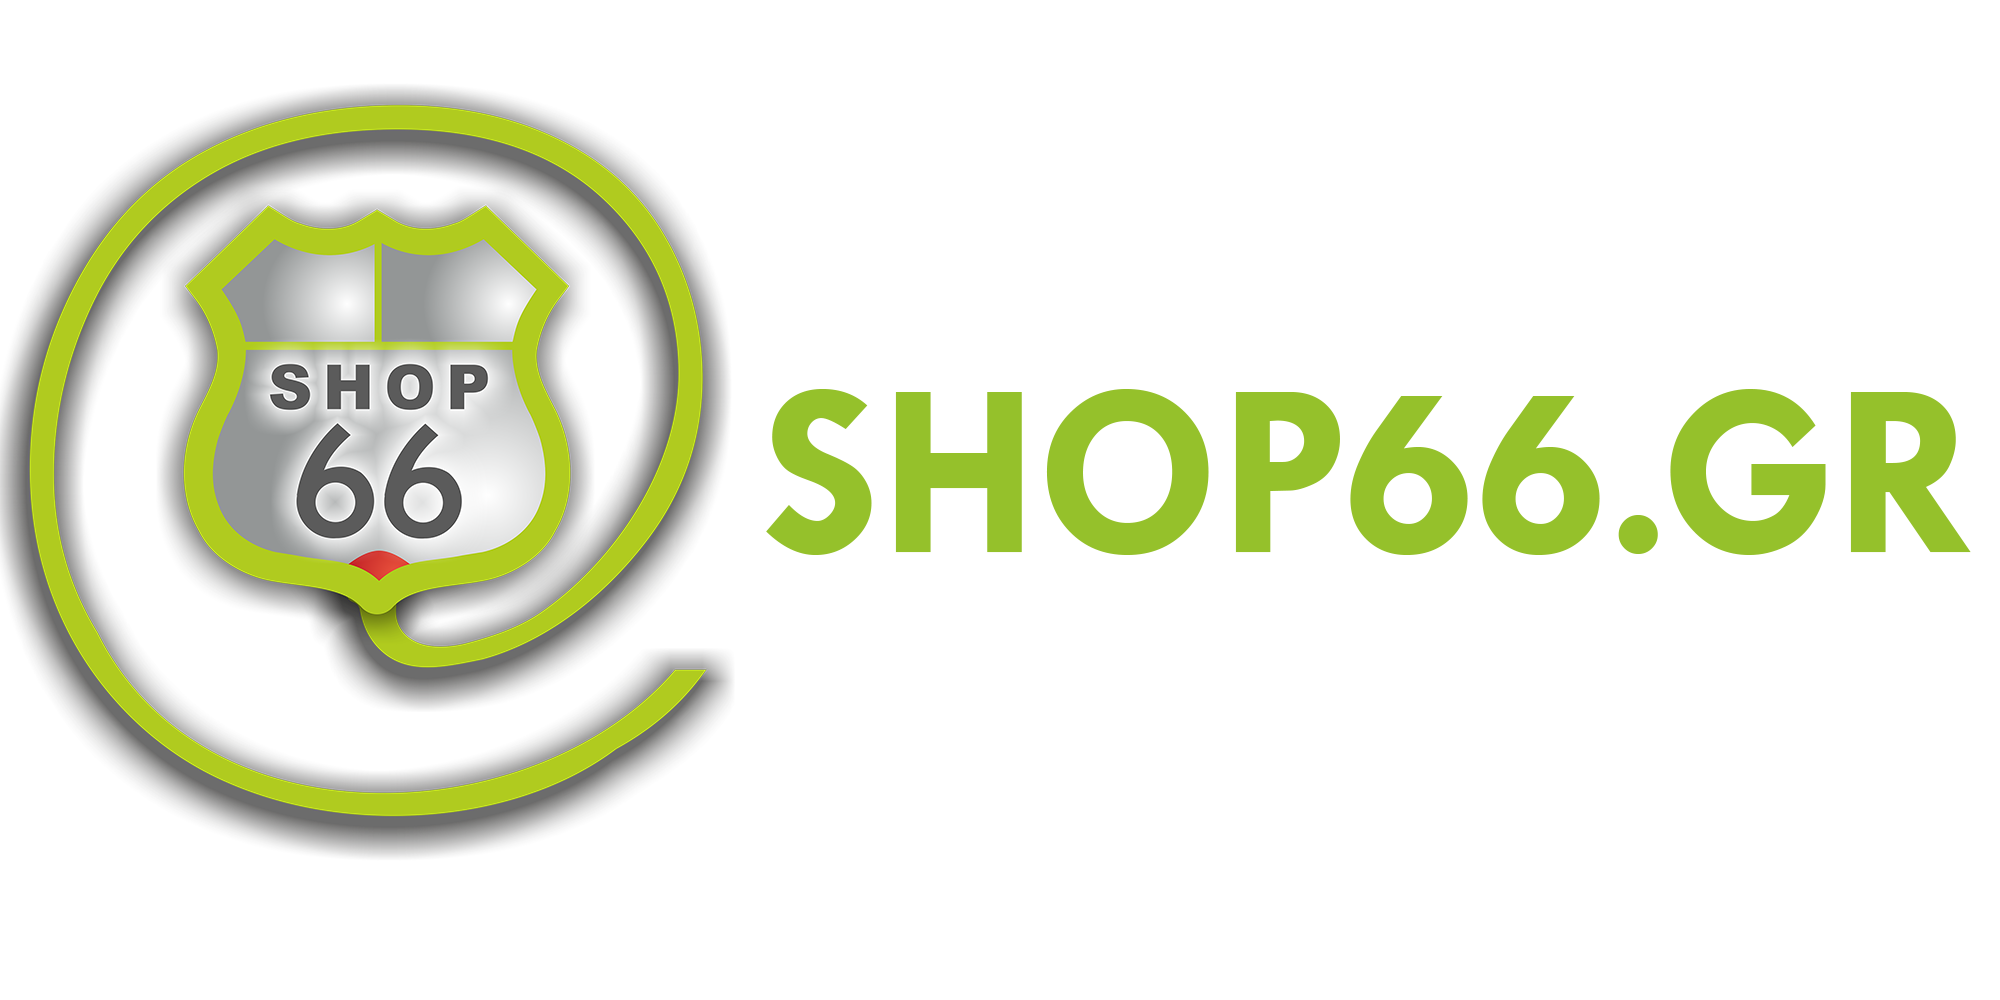 Shop66.gr